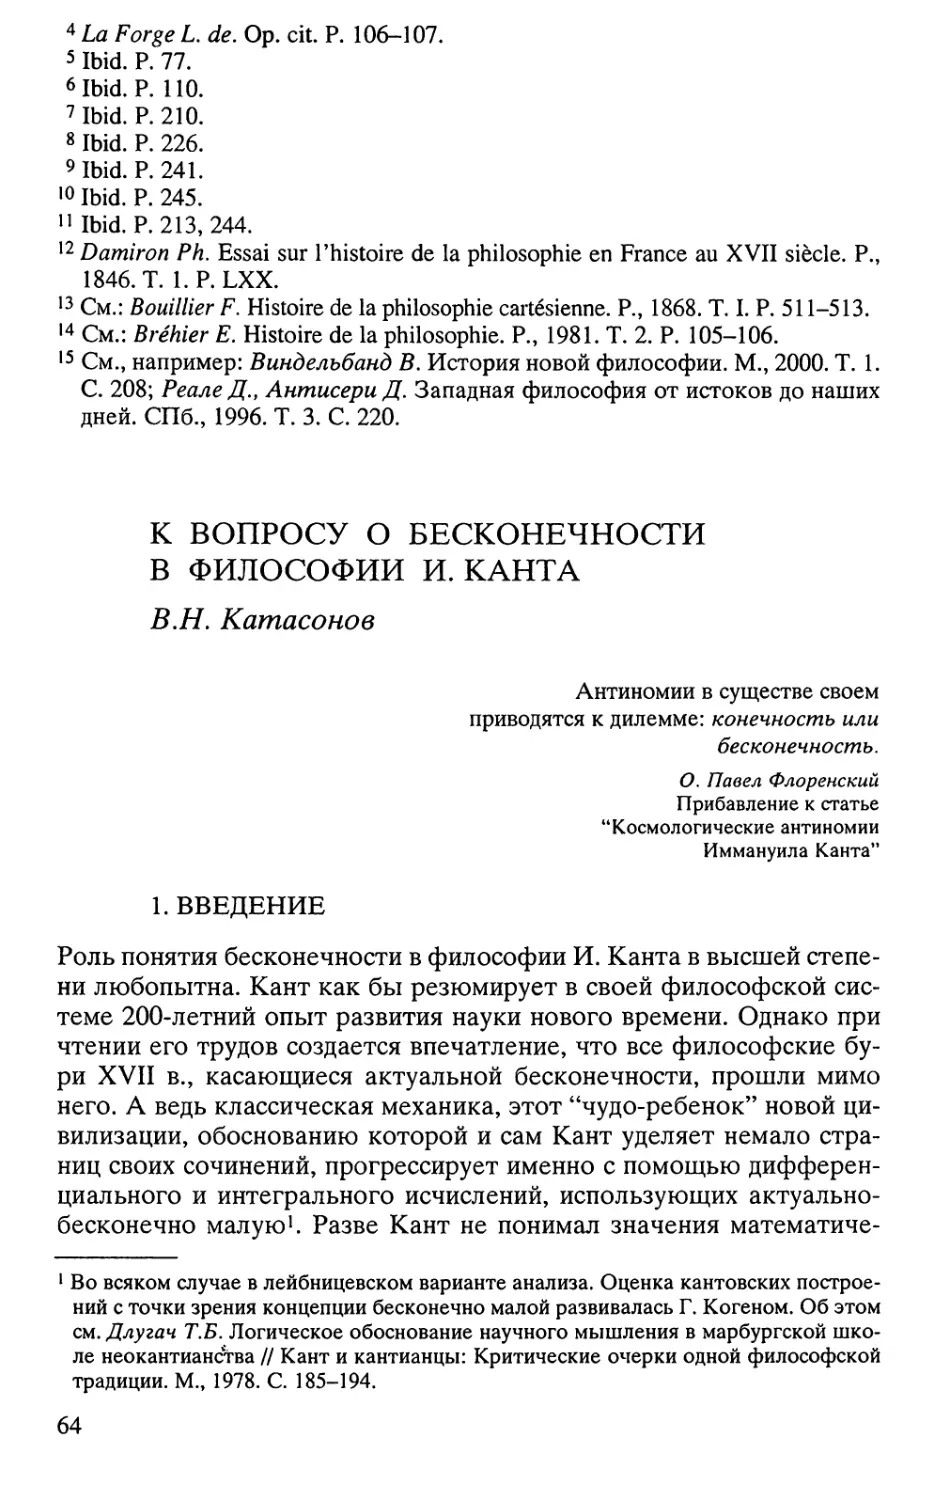 Катасонов В.Н. К вопросу о бесконечности в философии И. Канта